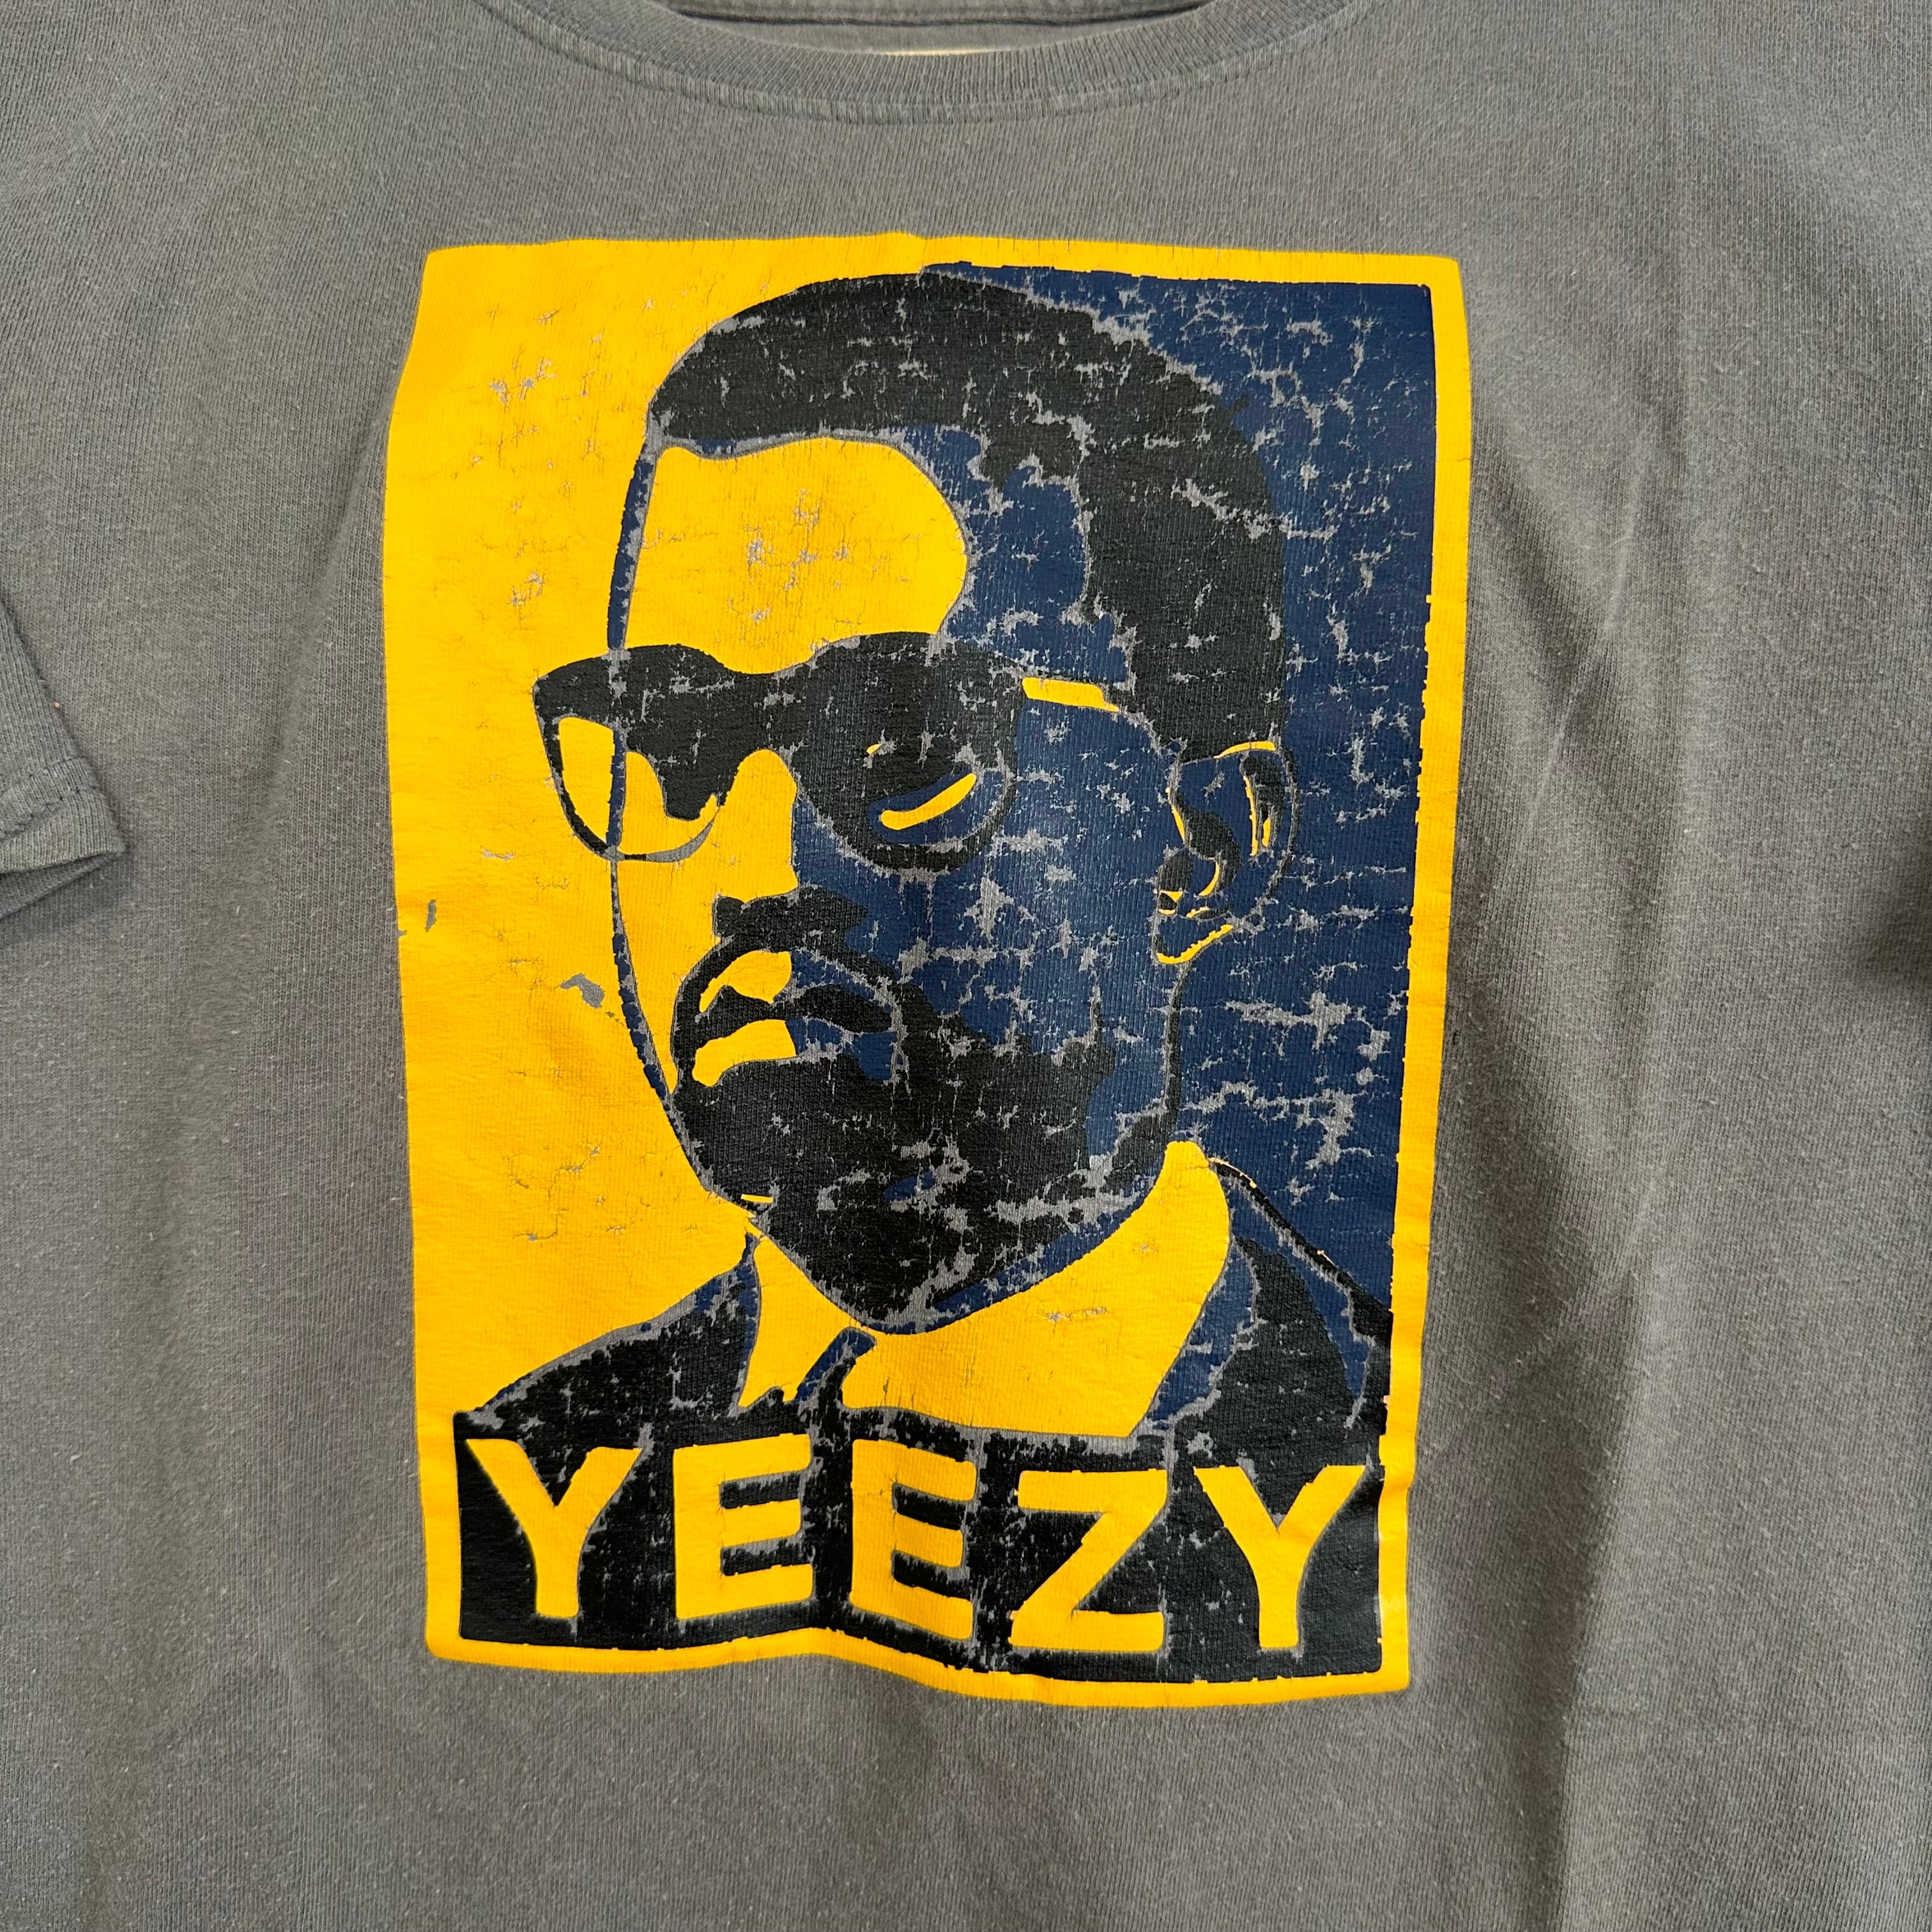 Yeezy Bootleg *Modern* T-Shirt